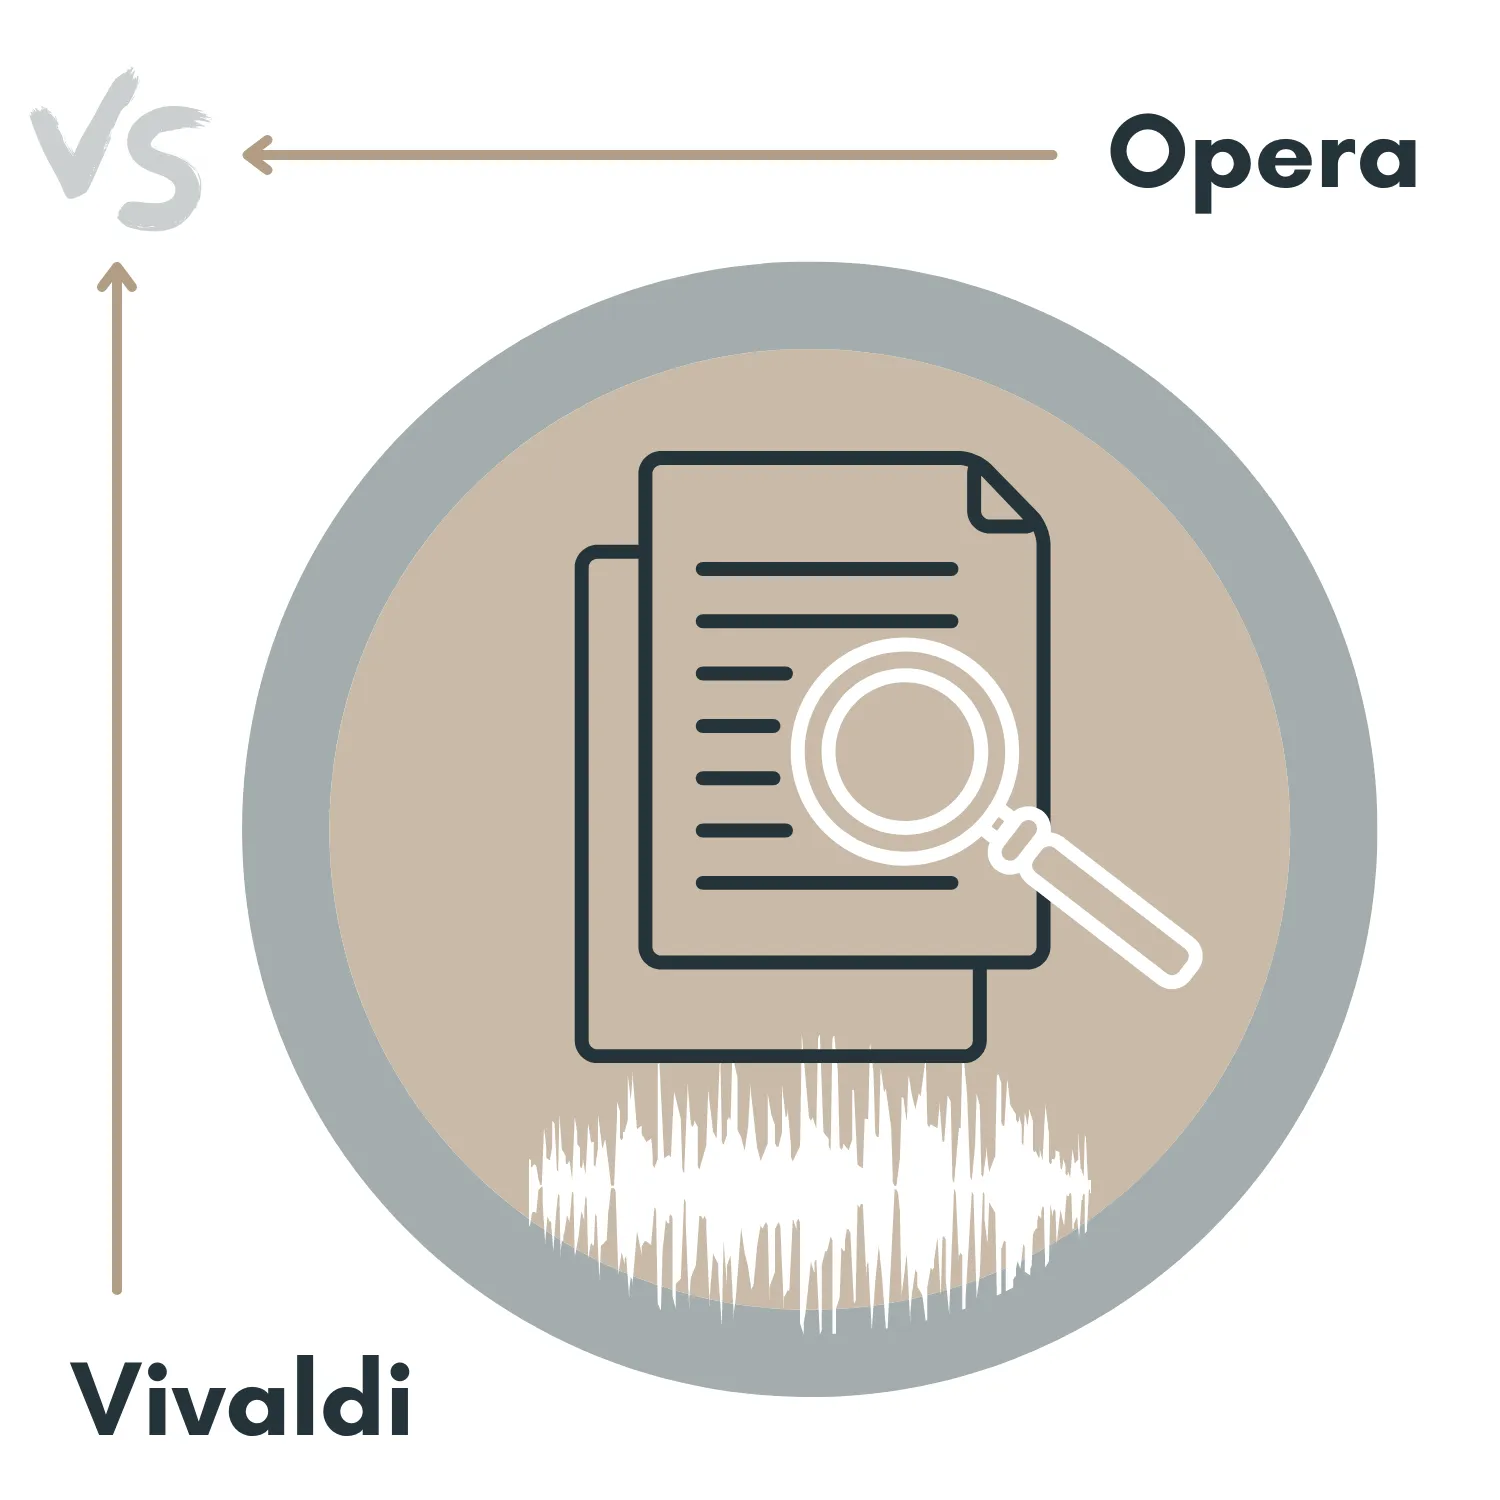 Opera vs Vivaldi